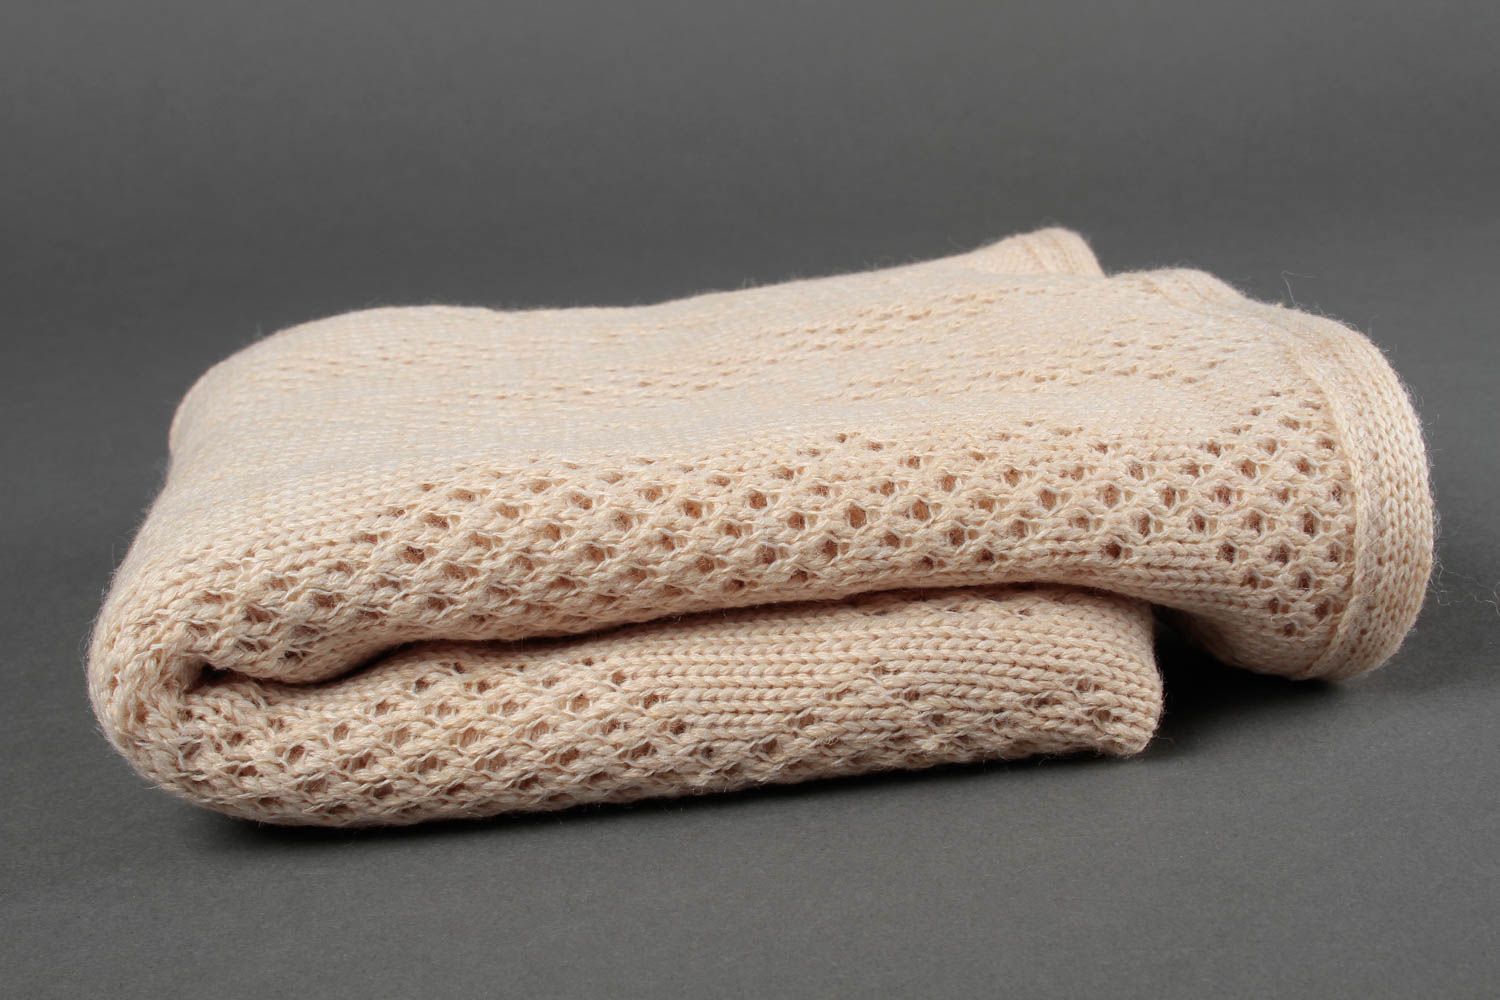 Handmade blanket baby blanket knitted blanket crocheted blanket gift ideas photo 1